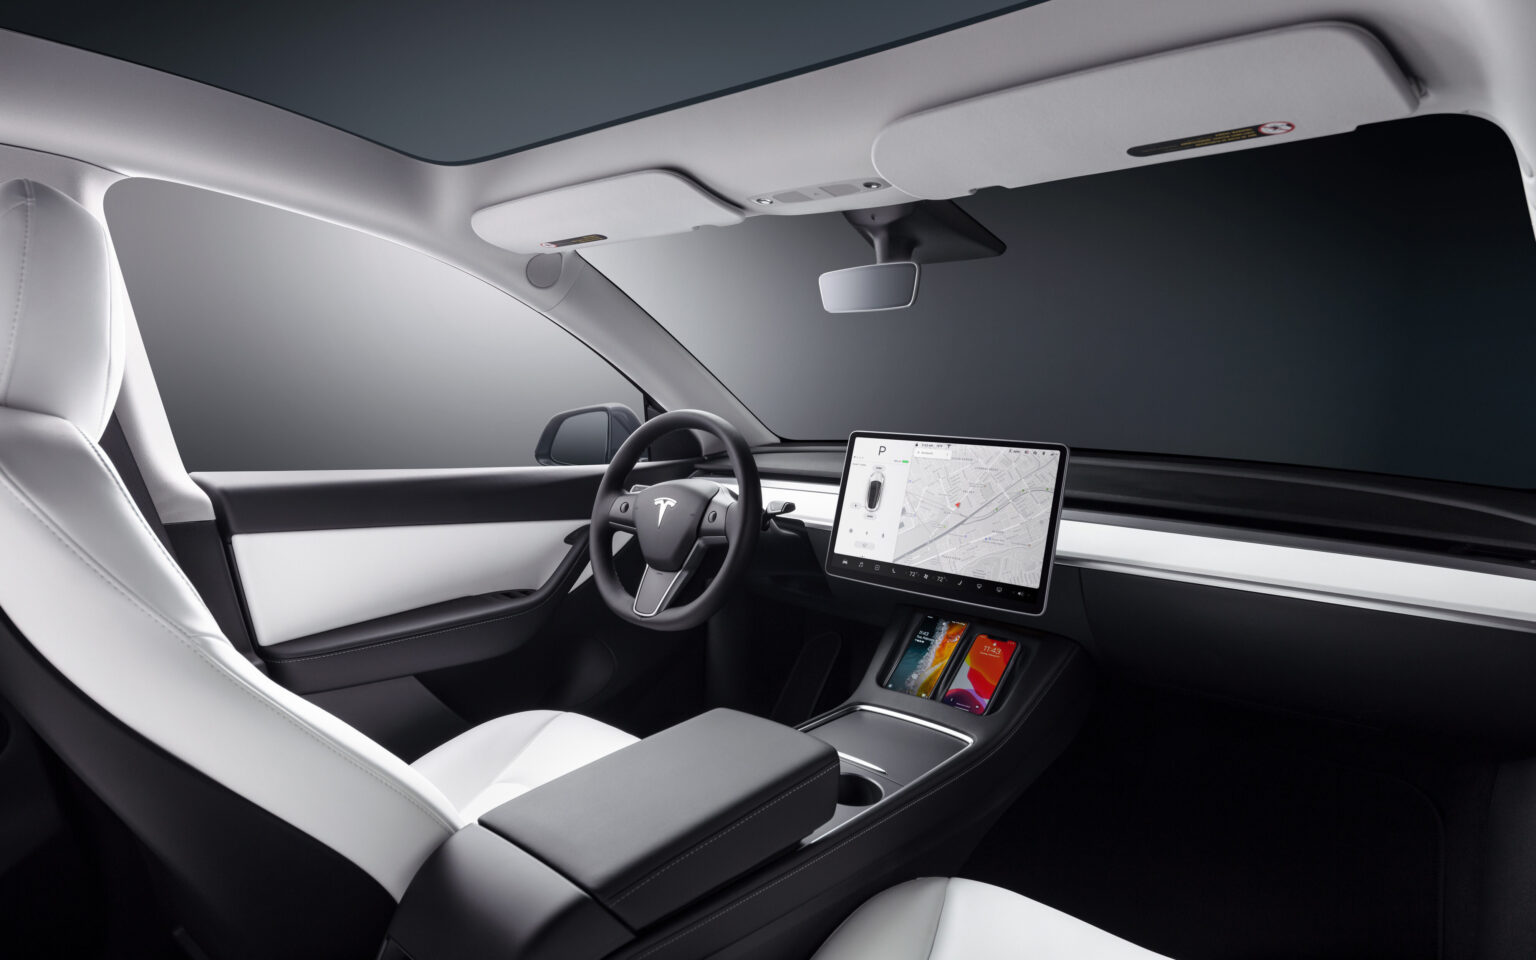 2023 Tesla Model Y Q3 2023 Sales Exterior Image 5